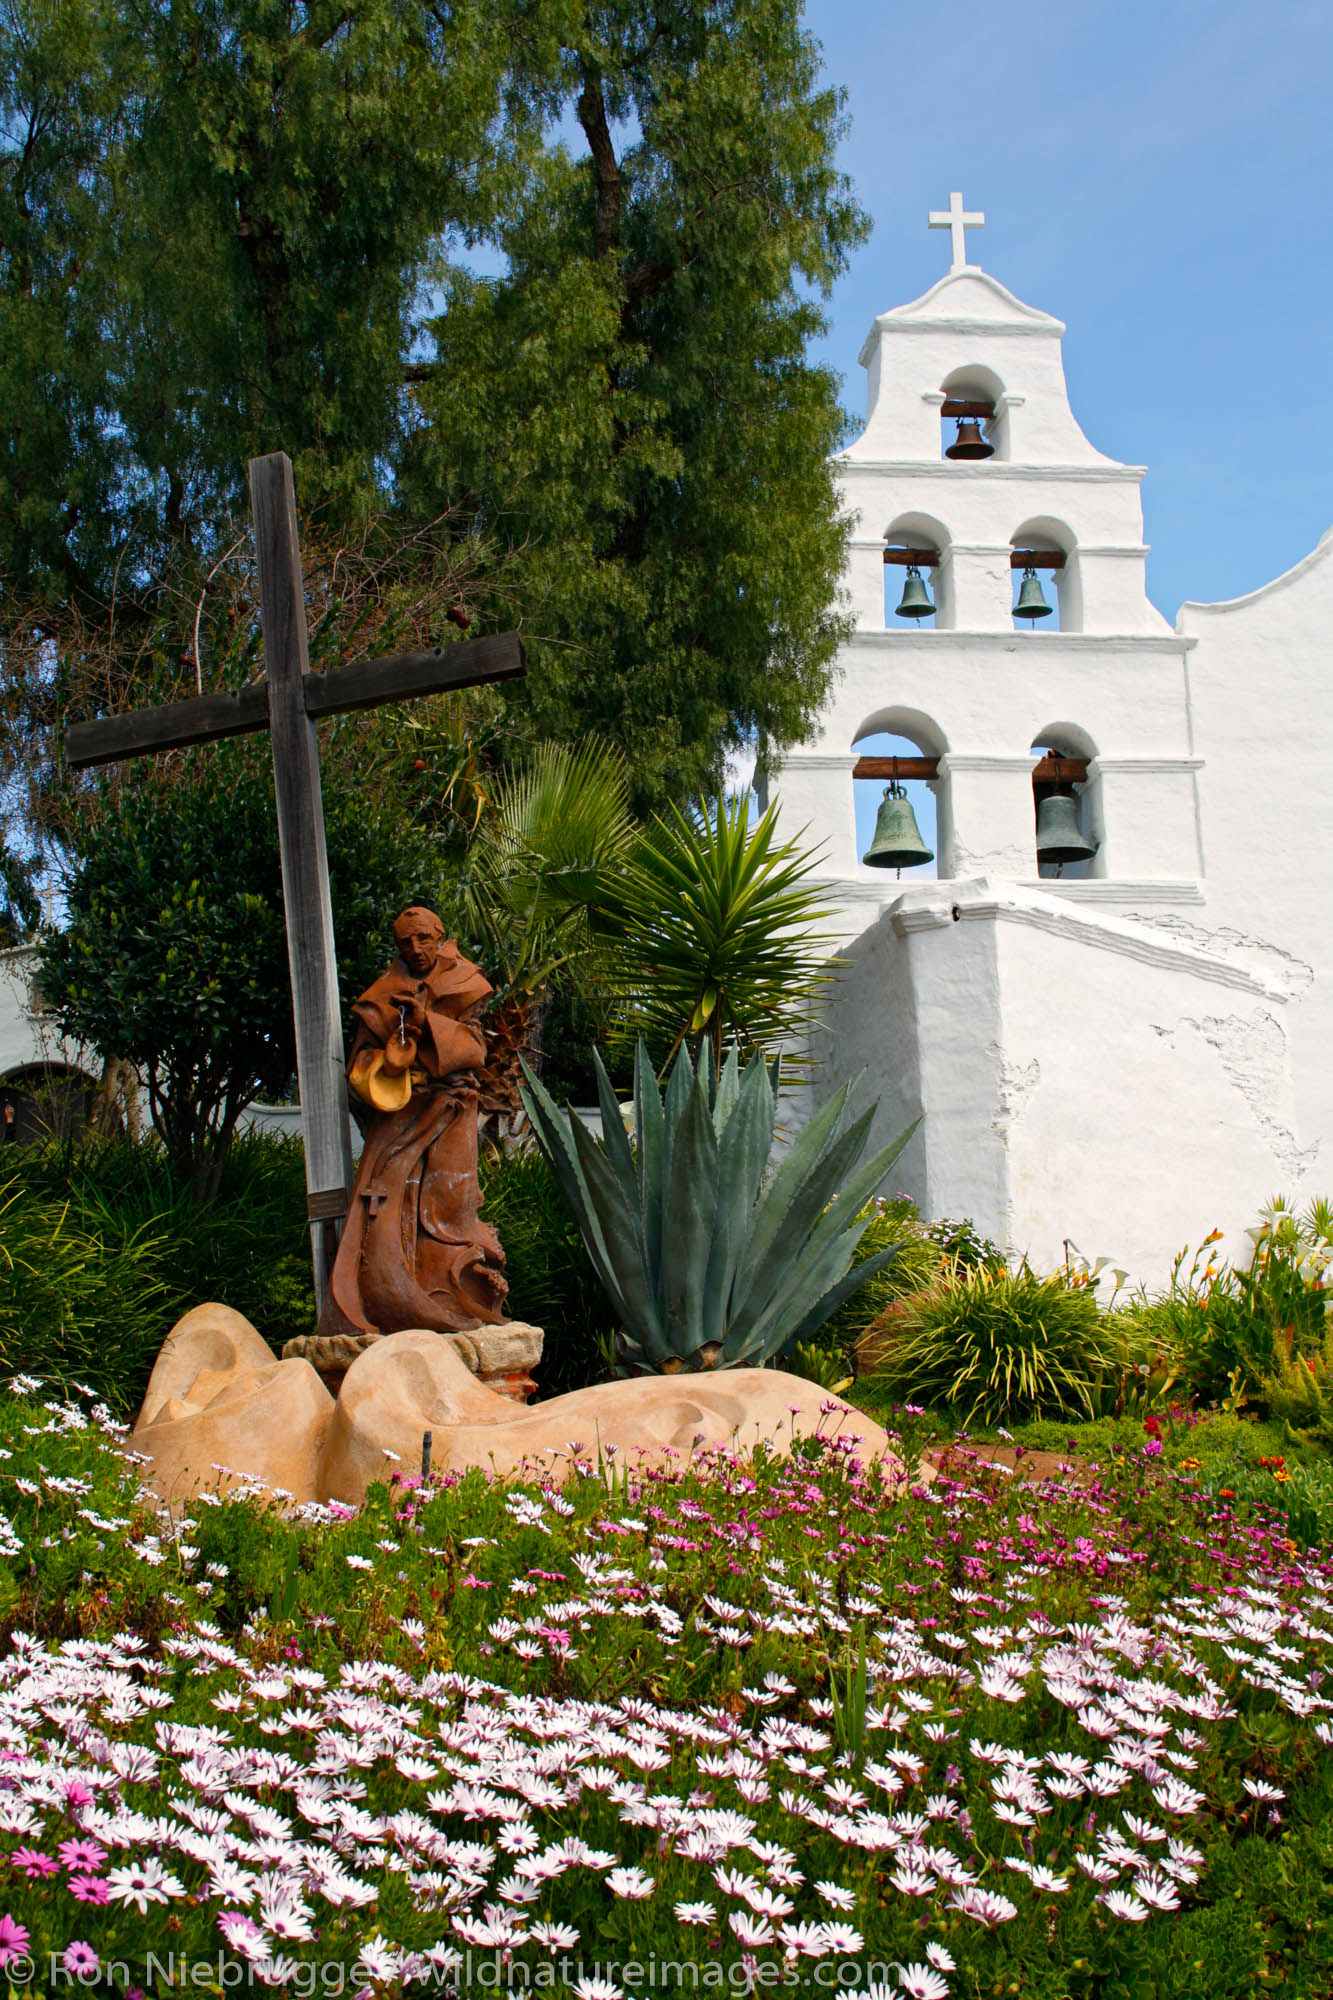 Mission Basilica San Diego de Alcala, San Diego, California.